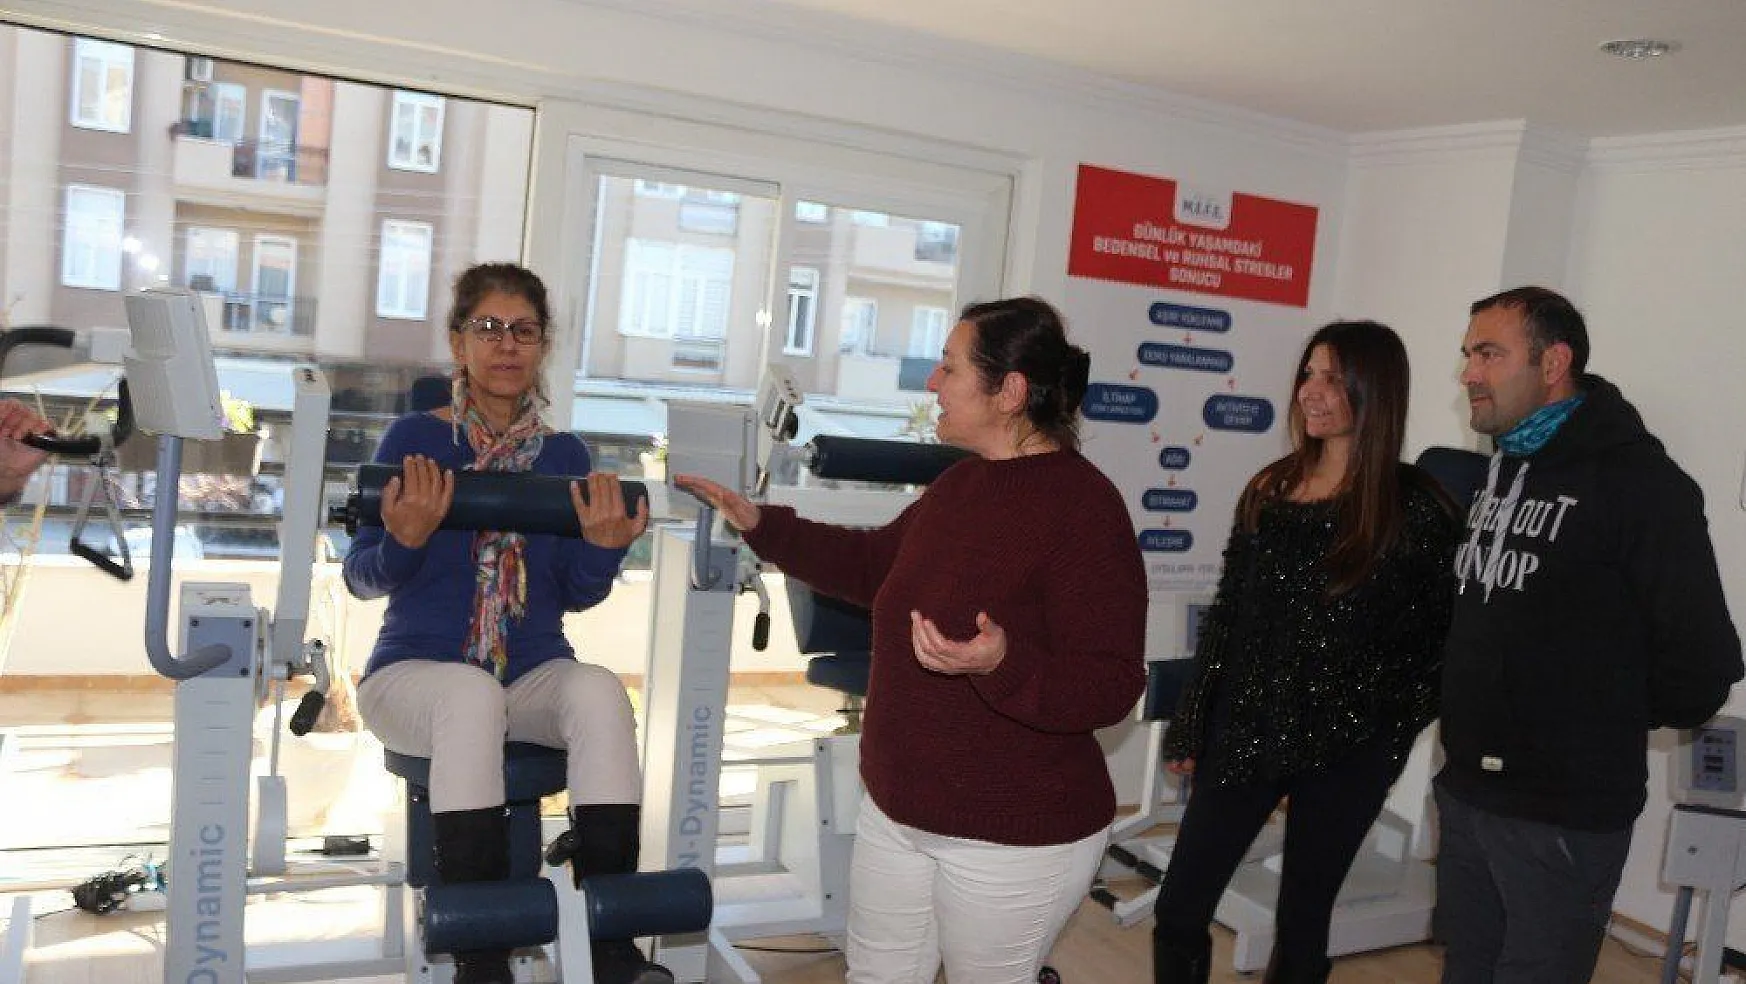 Türk Doktorun geliştirdiği EFEE yöntemi Marmarisli spor hocalarına tanıtıldı